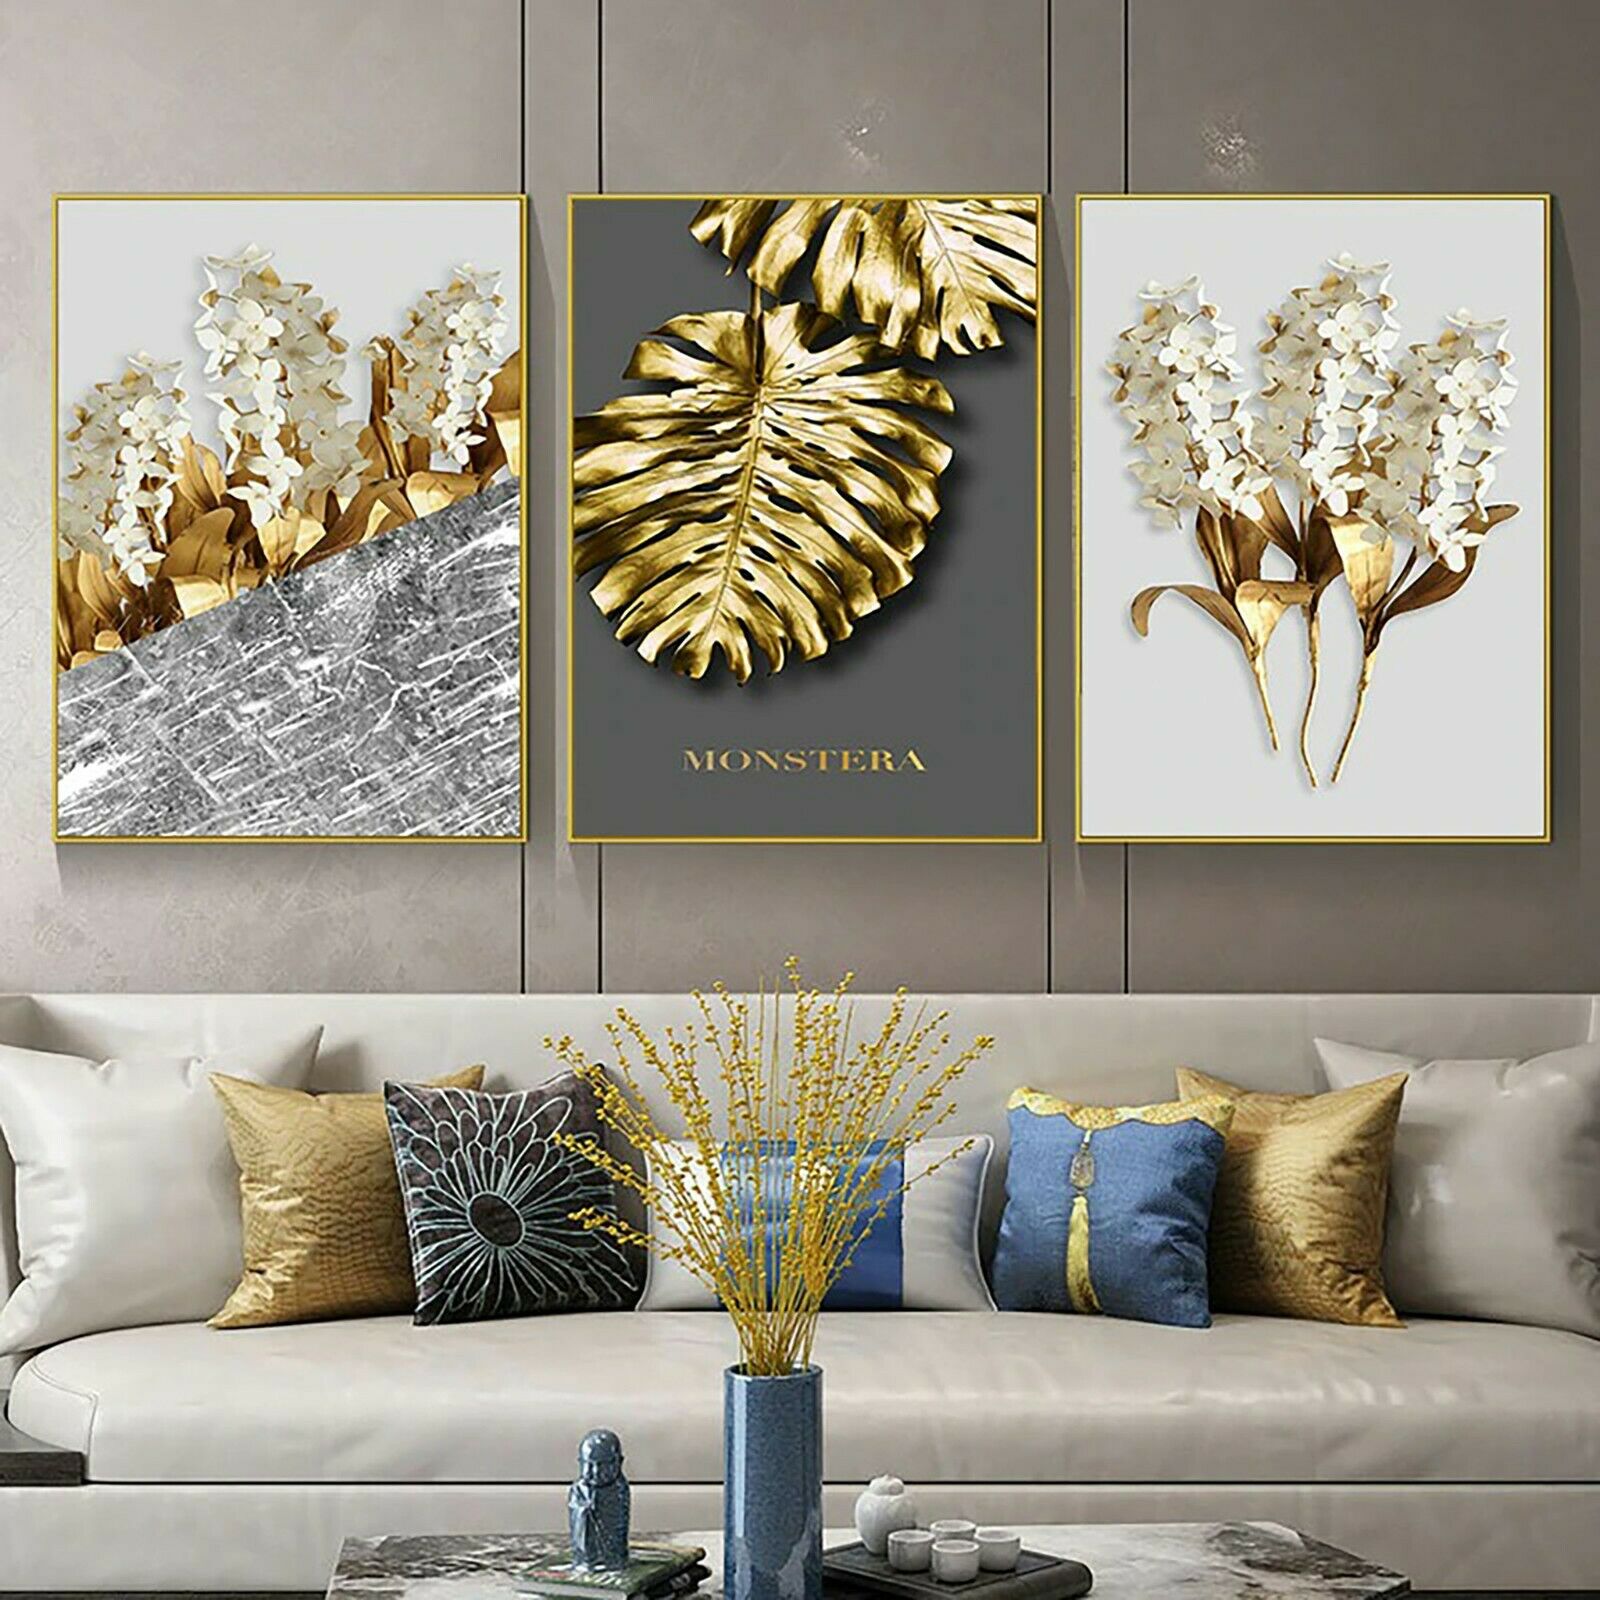 Spiegel und andere Wanddekorationen mit goldener Farbe